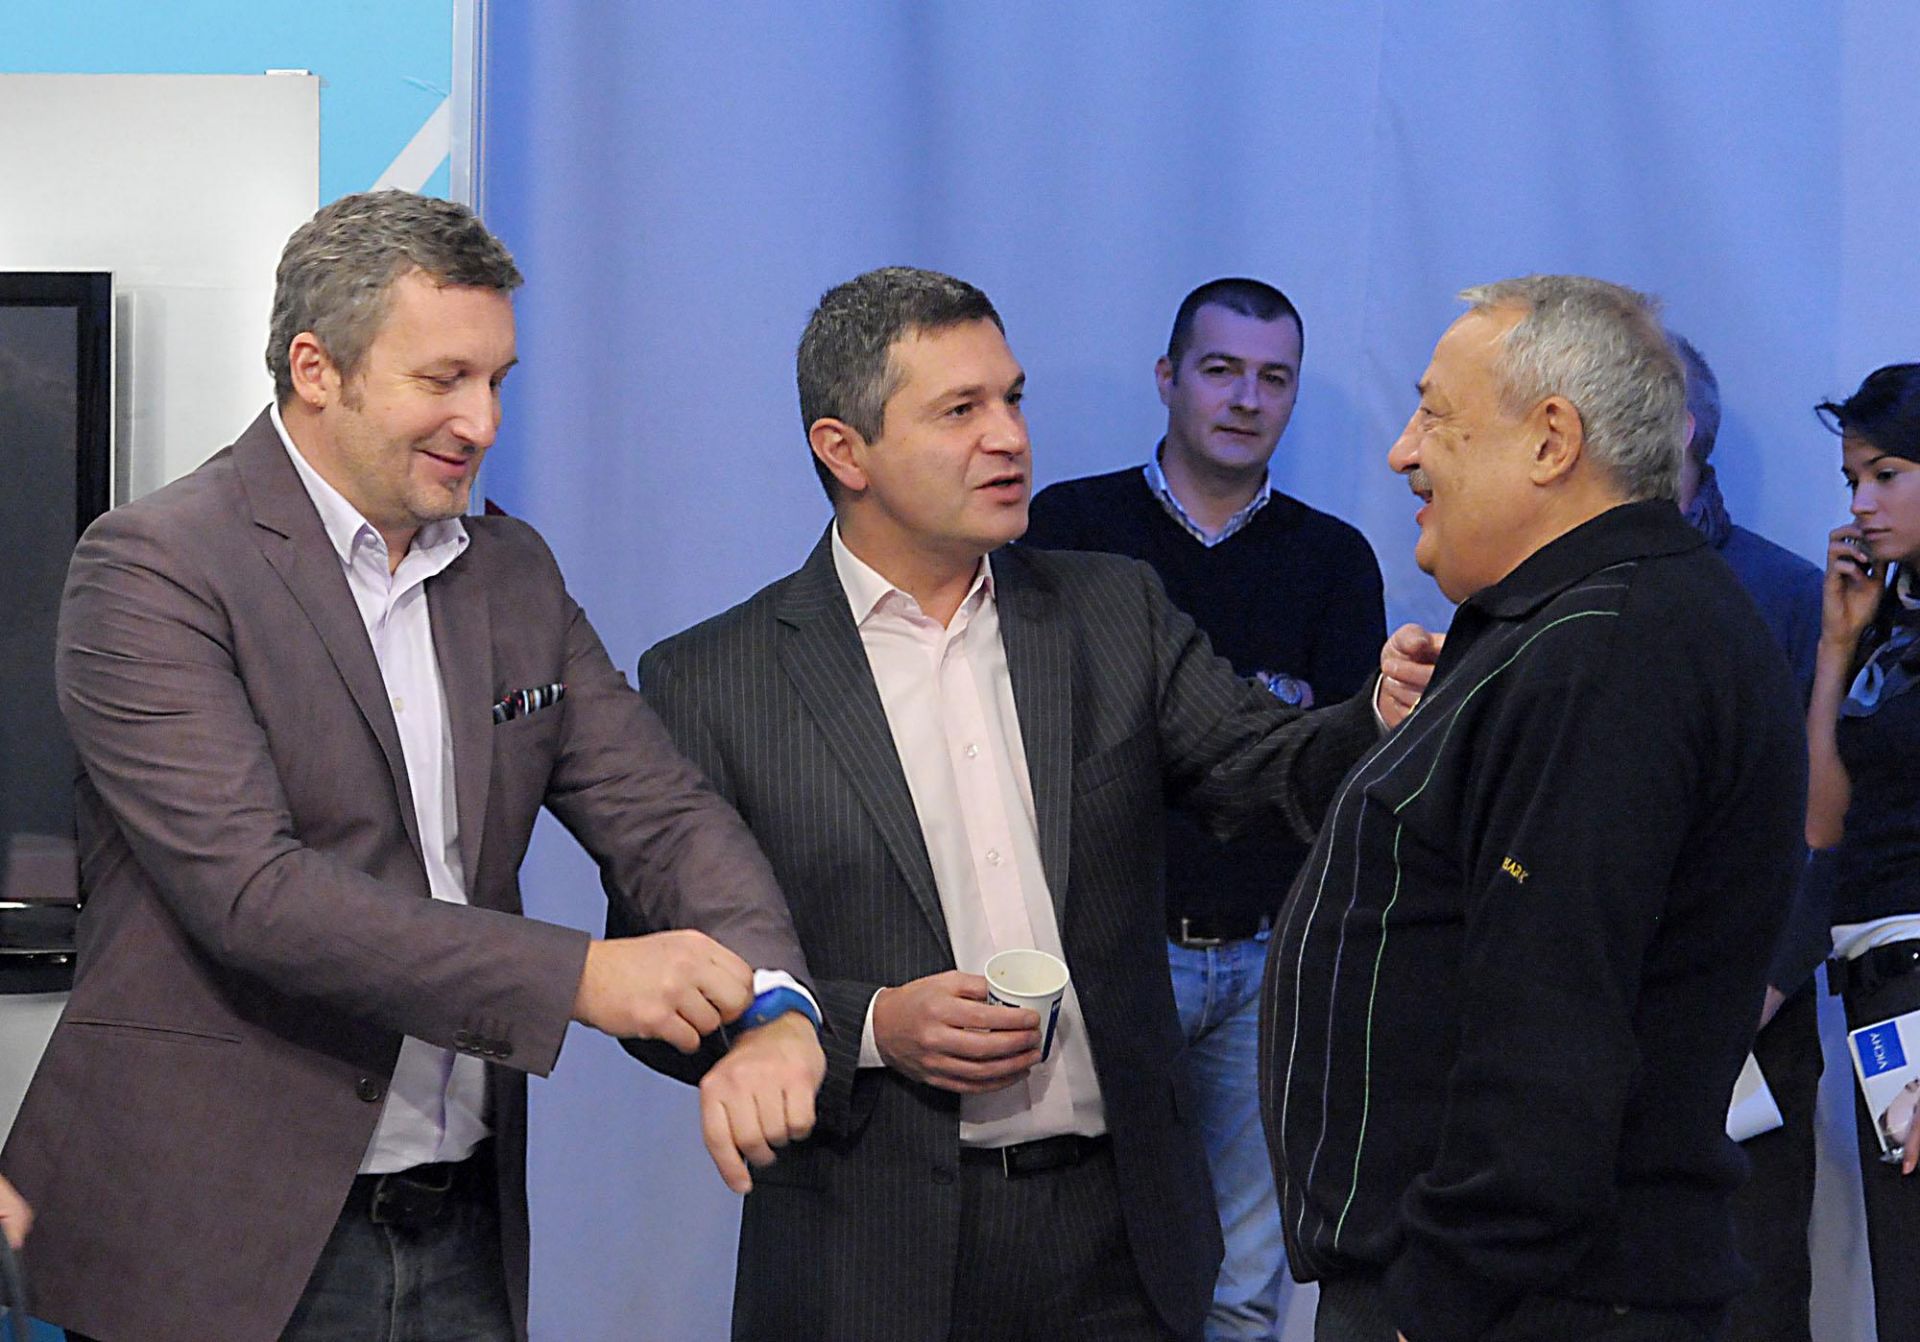 6 декември 2010 г. - Милен Цветков с Георги Кузмов (вляво) и Иван Гарелов (вдясно) на представянето на новите лица в сутрешния блок на БНТ.